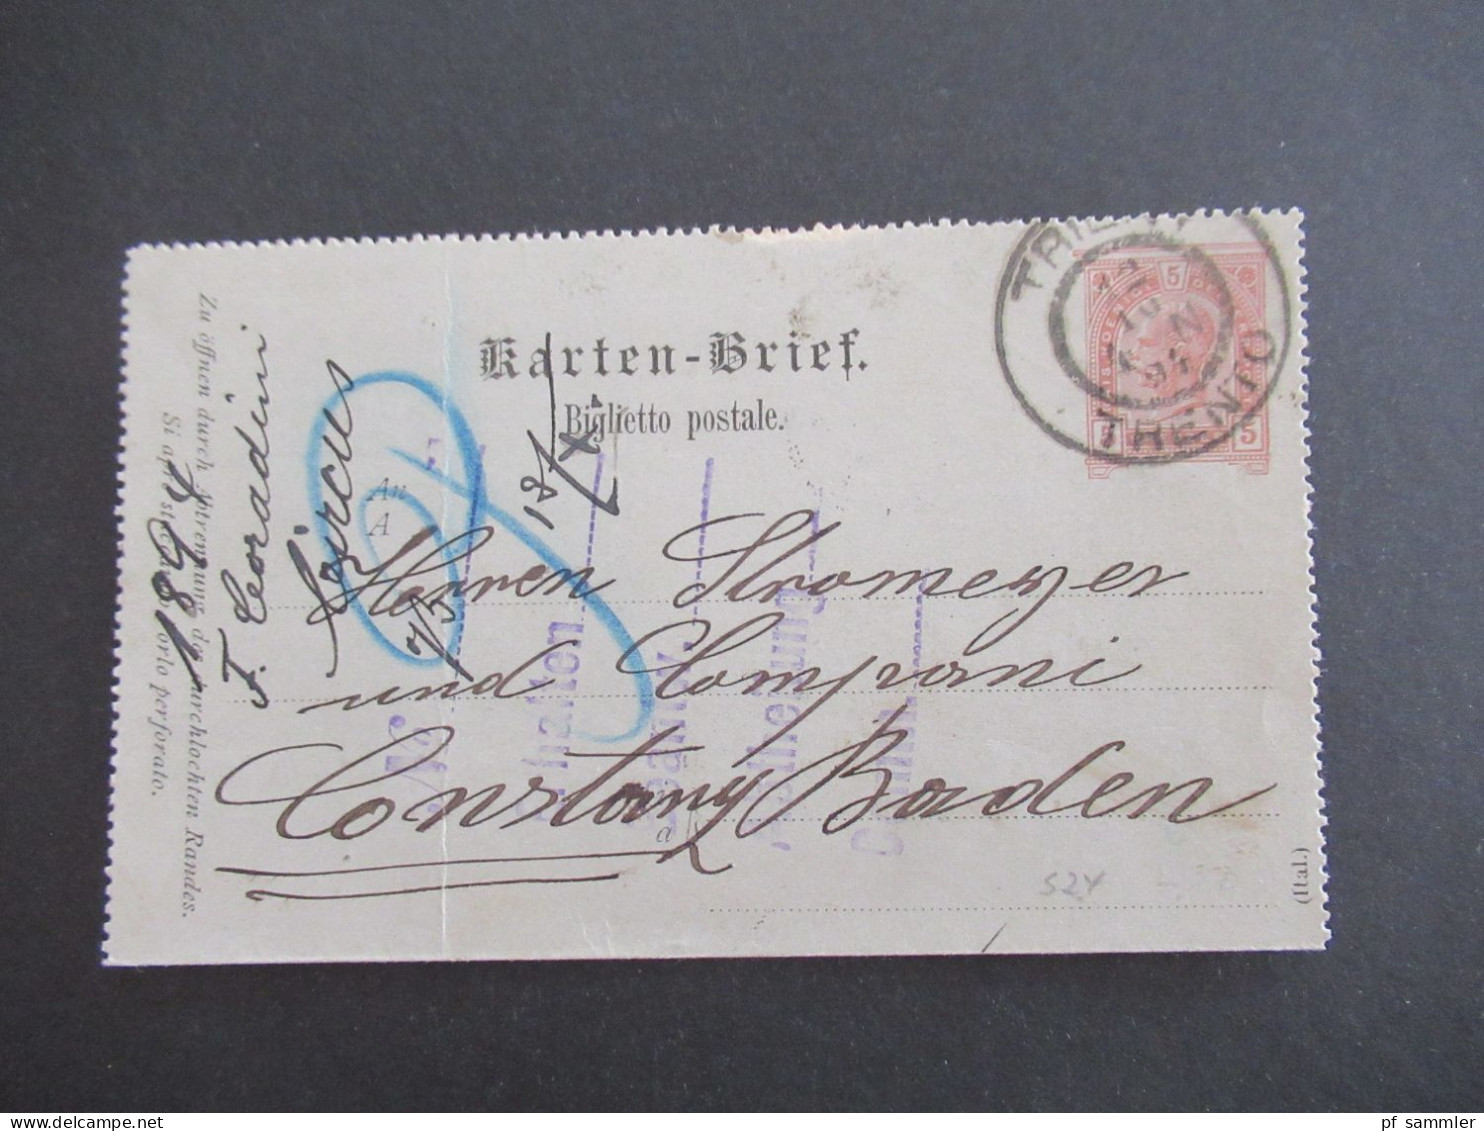 Österreich 1894 Kartenbrief 5 Kreuzer K2 Trient Trento - Konstanz Baden Mit Ank. Gitterstempel Konstanz / Stromeyer - Letter-Cards